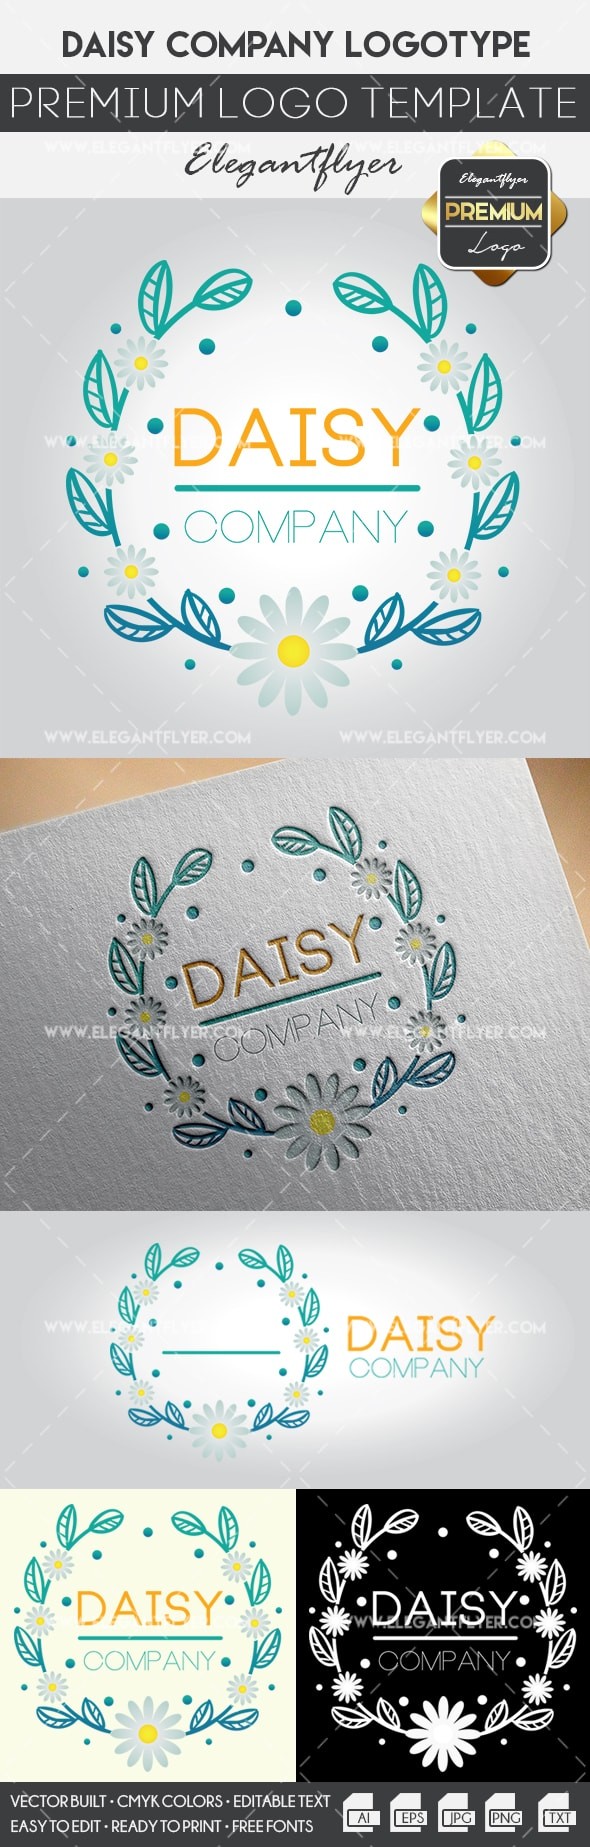 Daisy Company: Azienda Daisy by ElegantFlyer